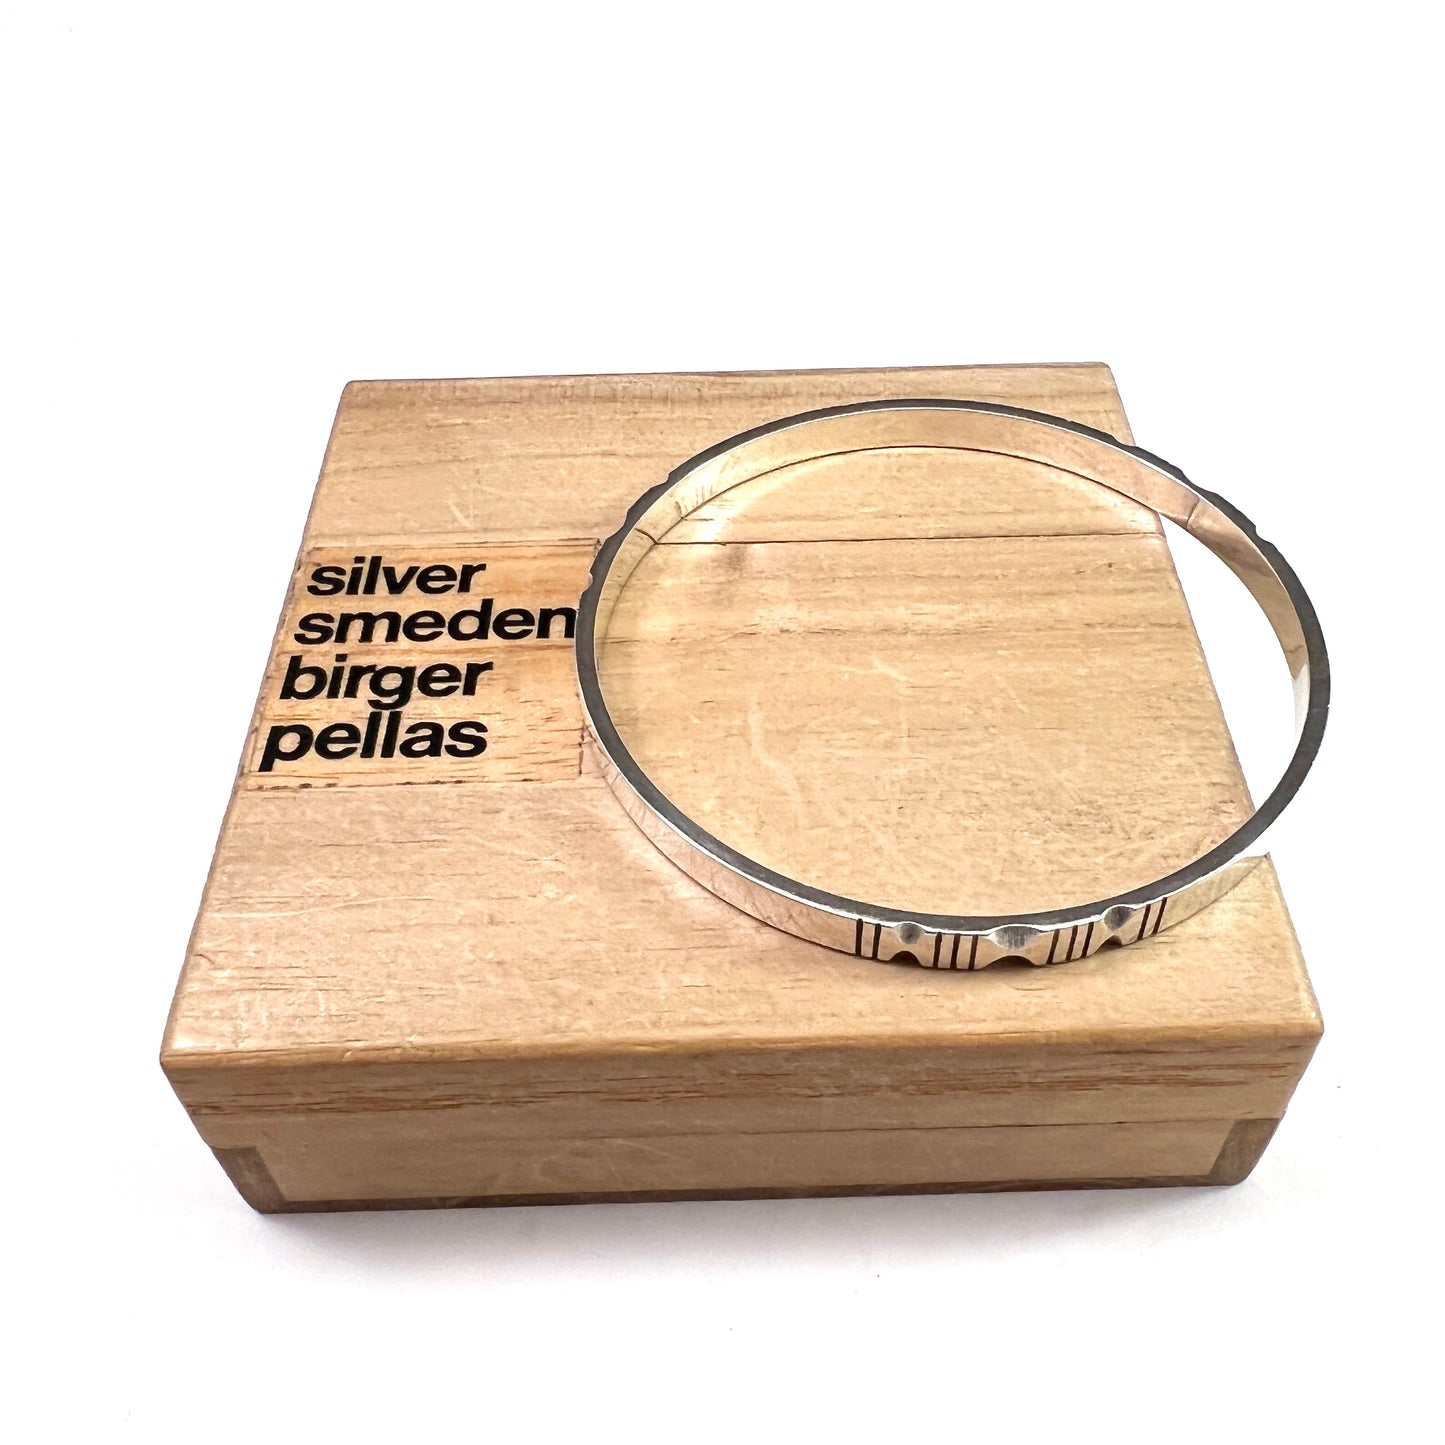 Birger Pellas, Sweden 1964. Vintage Sterling Silver Bangle Bracelet. Signed.